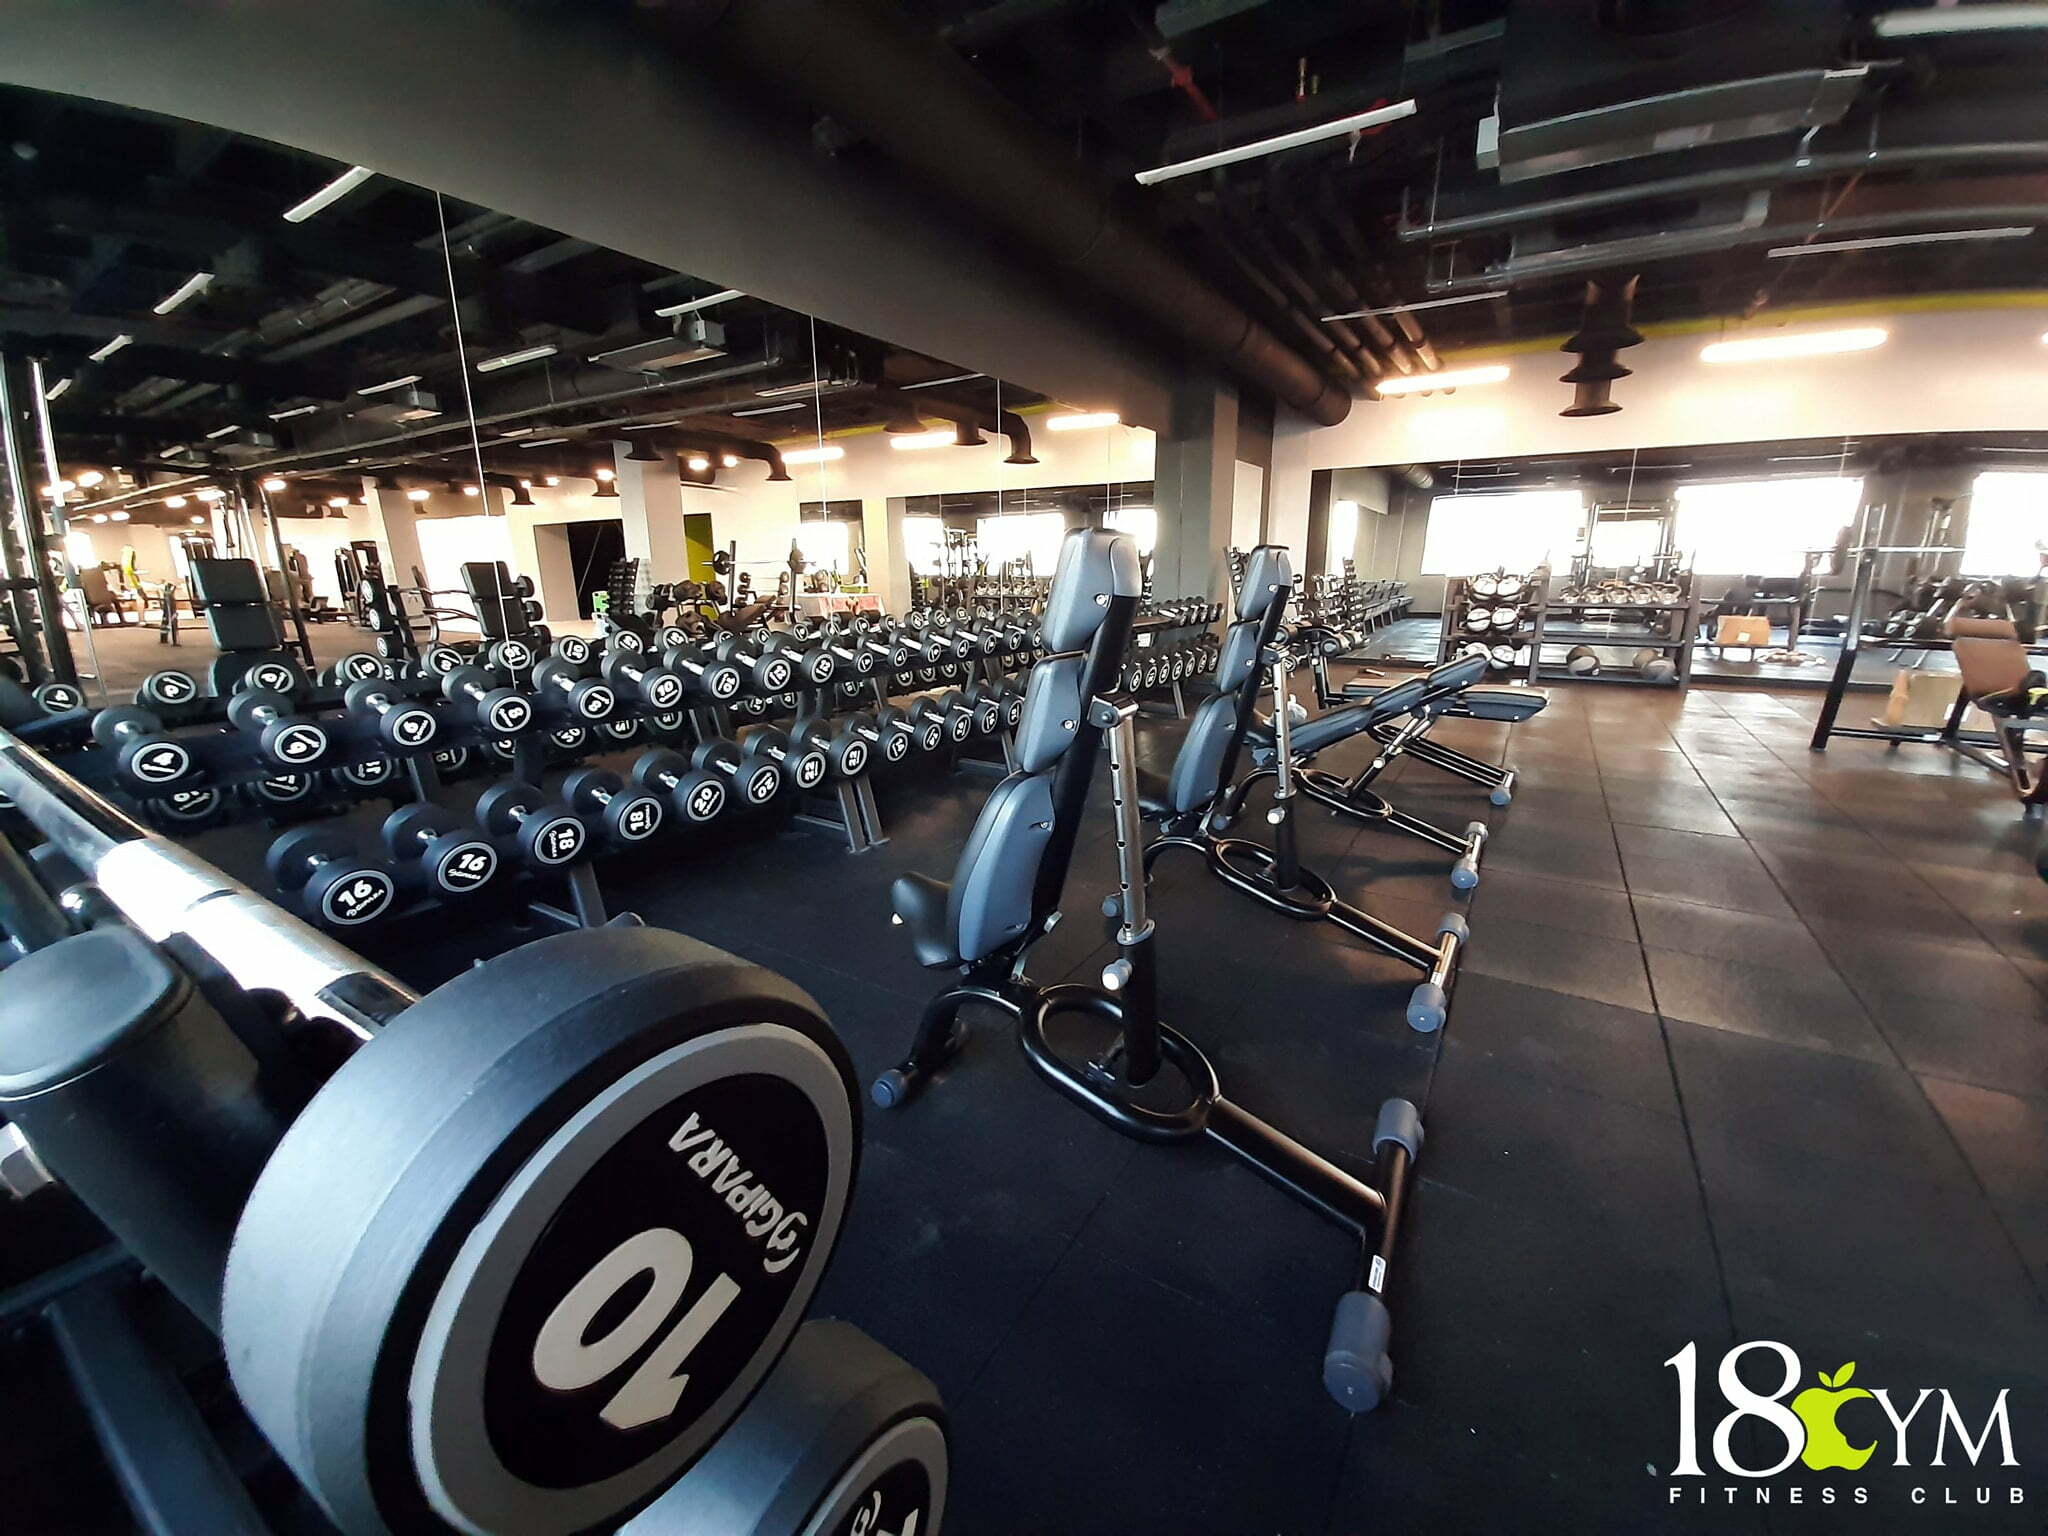 Nu ai găsit sala de fitness potrivită? 18 Gym poate fi pe placul tău!